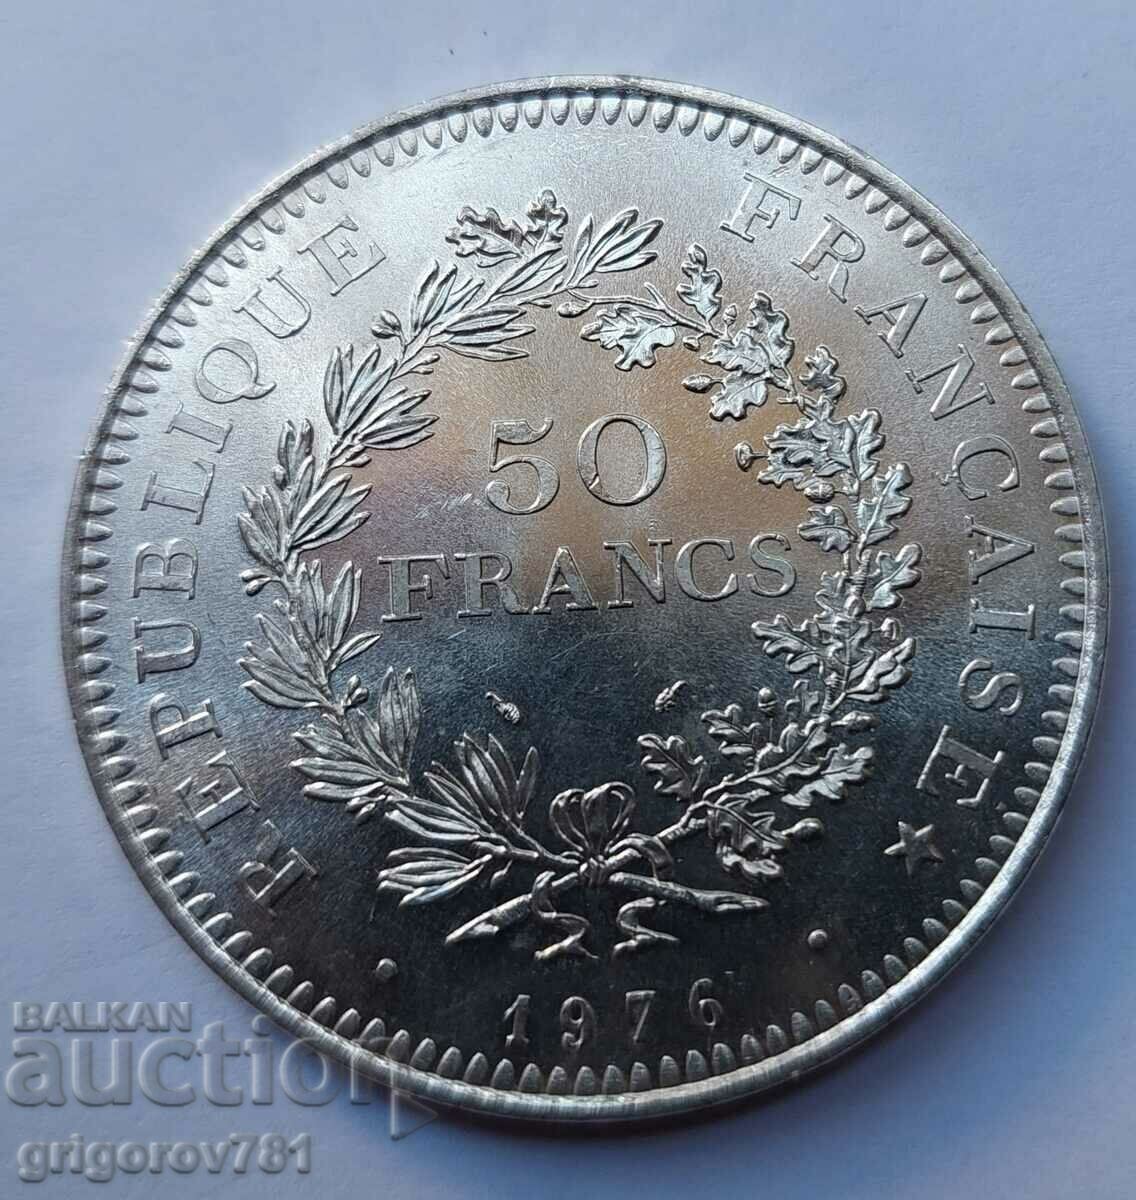 Ασήμι 50 φράγκων Γαλλία 1976 - Ασημένιο νόμισμα #23